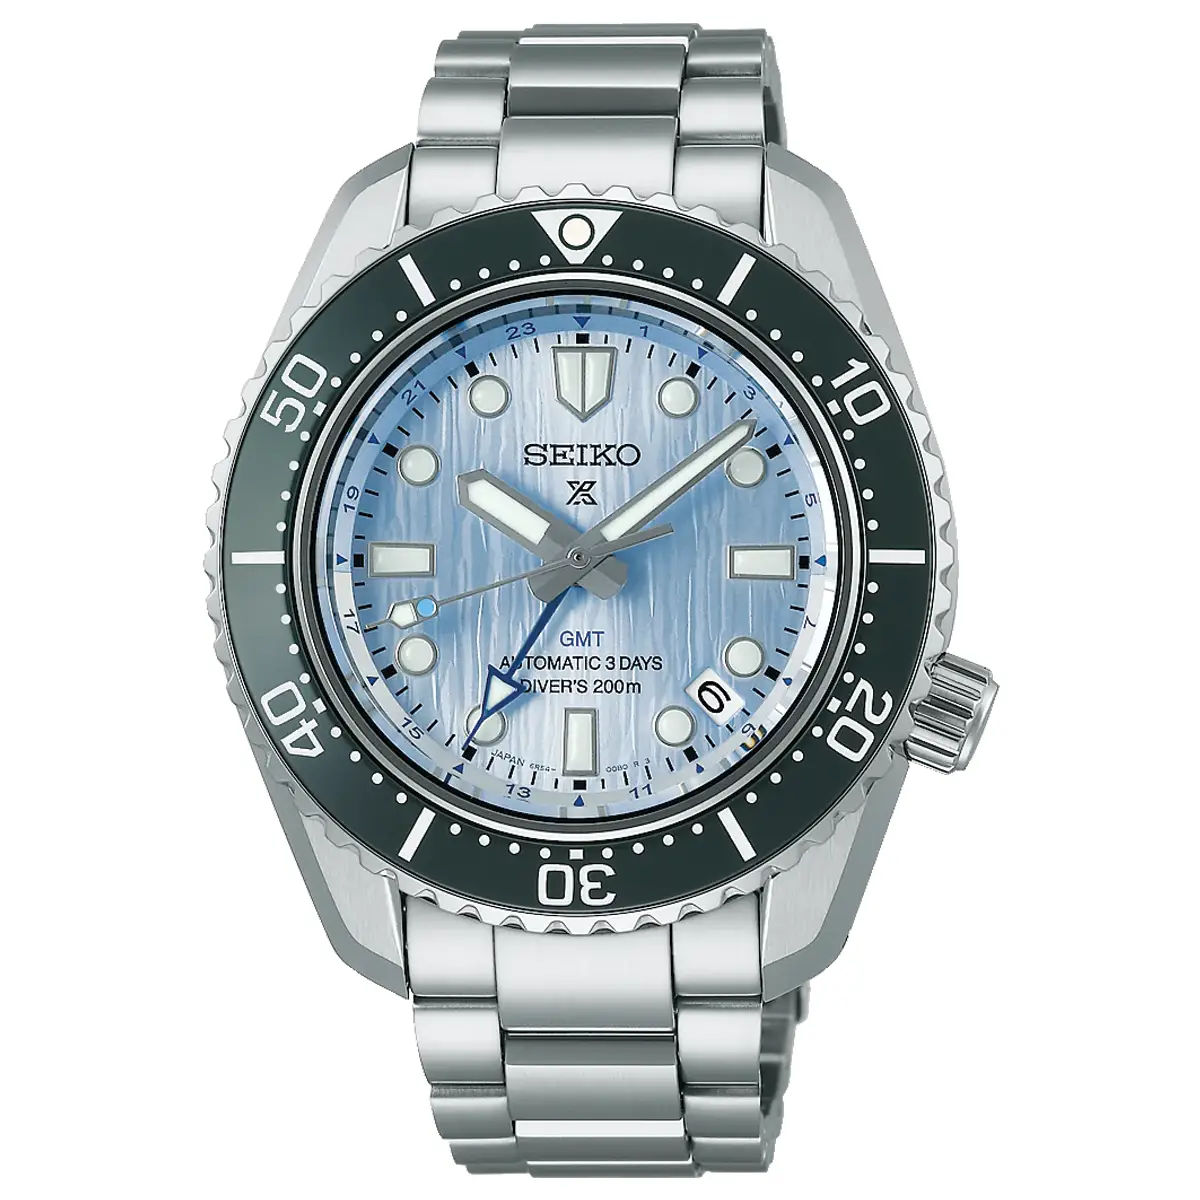 Đồng hồ Seiko Prospex Seiko Watchmaking 110th Anniversary Limited Edition SBEJ013 (SPB385) với mặt số màu xanh. Dây đeo bằng thép và vải. Thân vỏ bằng thép.